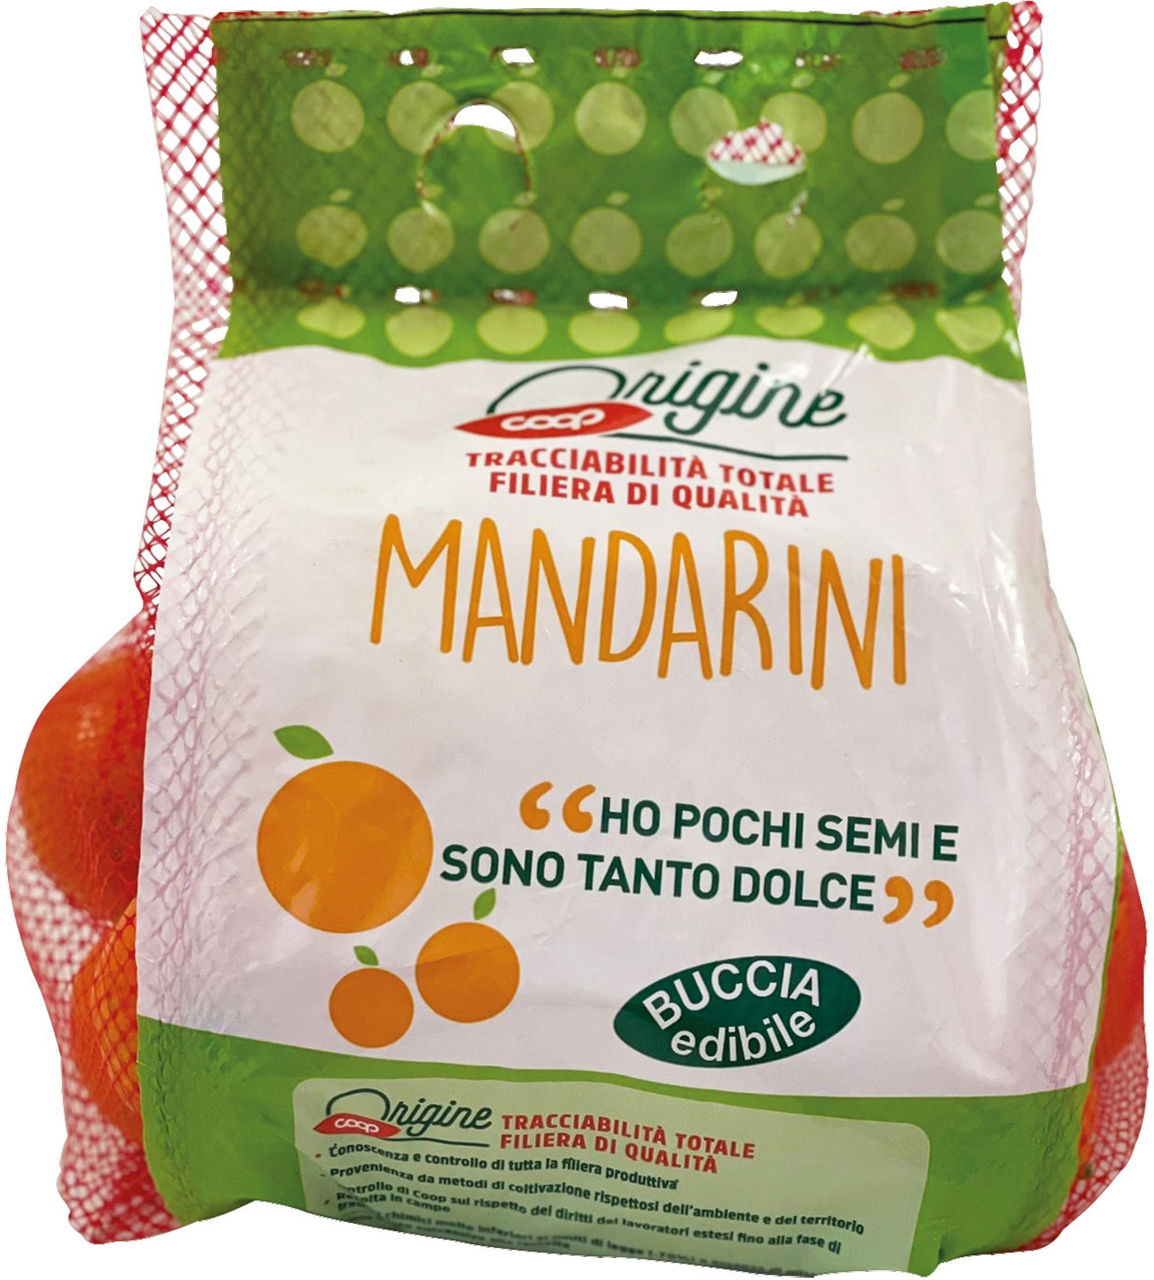 Mandarini nadorcott coop it 3-4 i^ vtbg kg 1